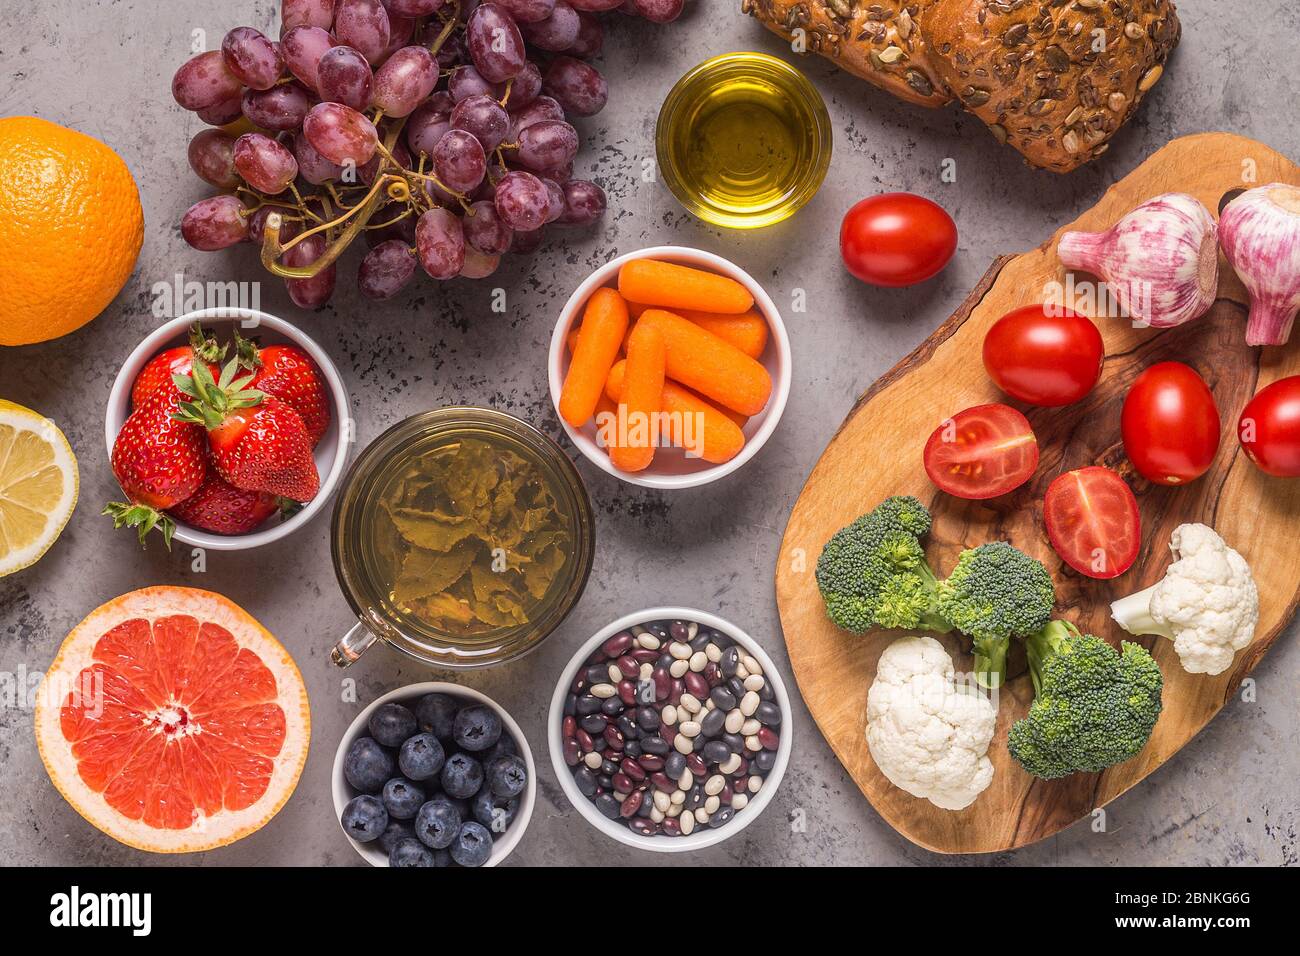 Lebensmittel, die das Risiko für Krebs senken könnten, Draufsicht. Stockfoto